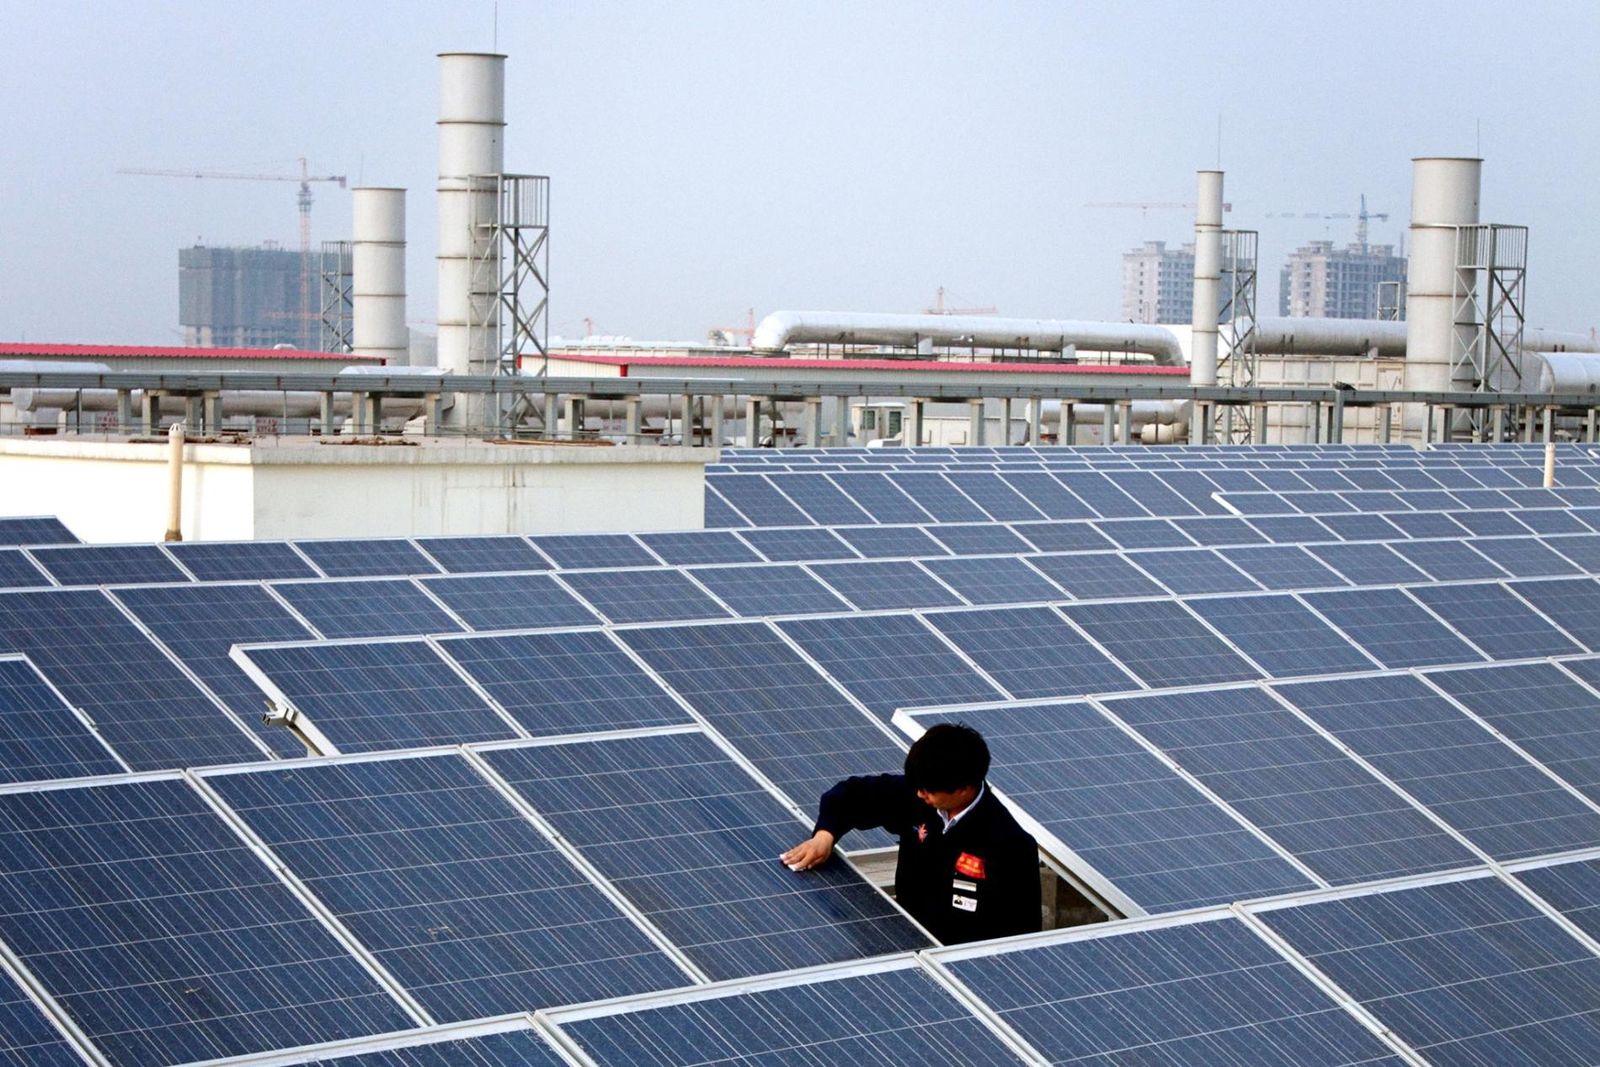 Développement durable : Le nombre d'emplois liés aux énergies renouvelables s'élève à 12,7 millions dans le monde